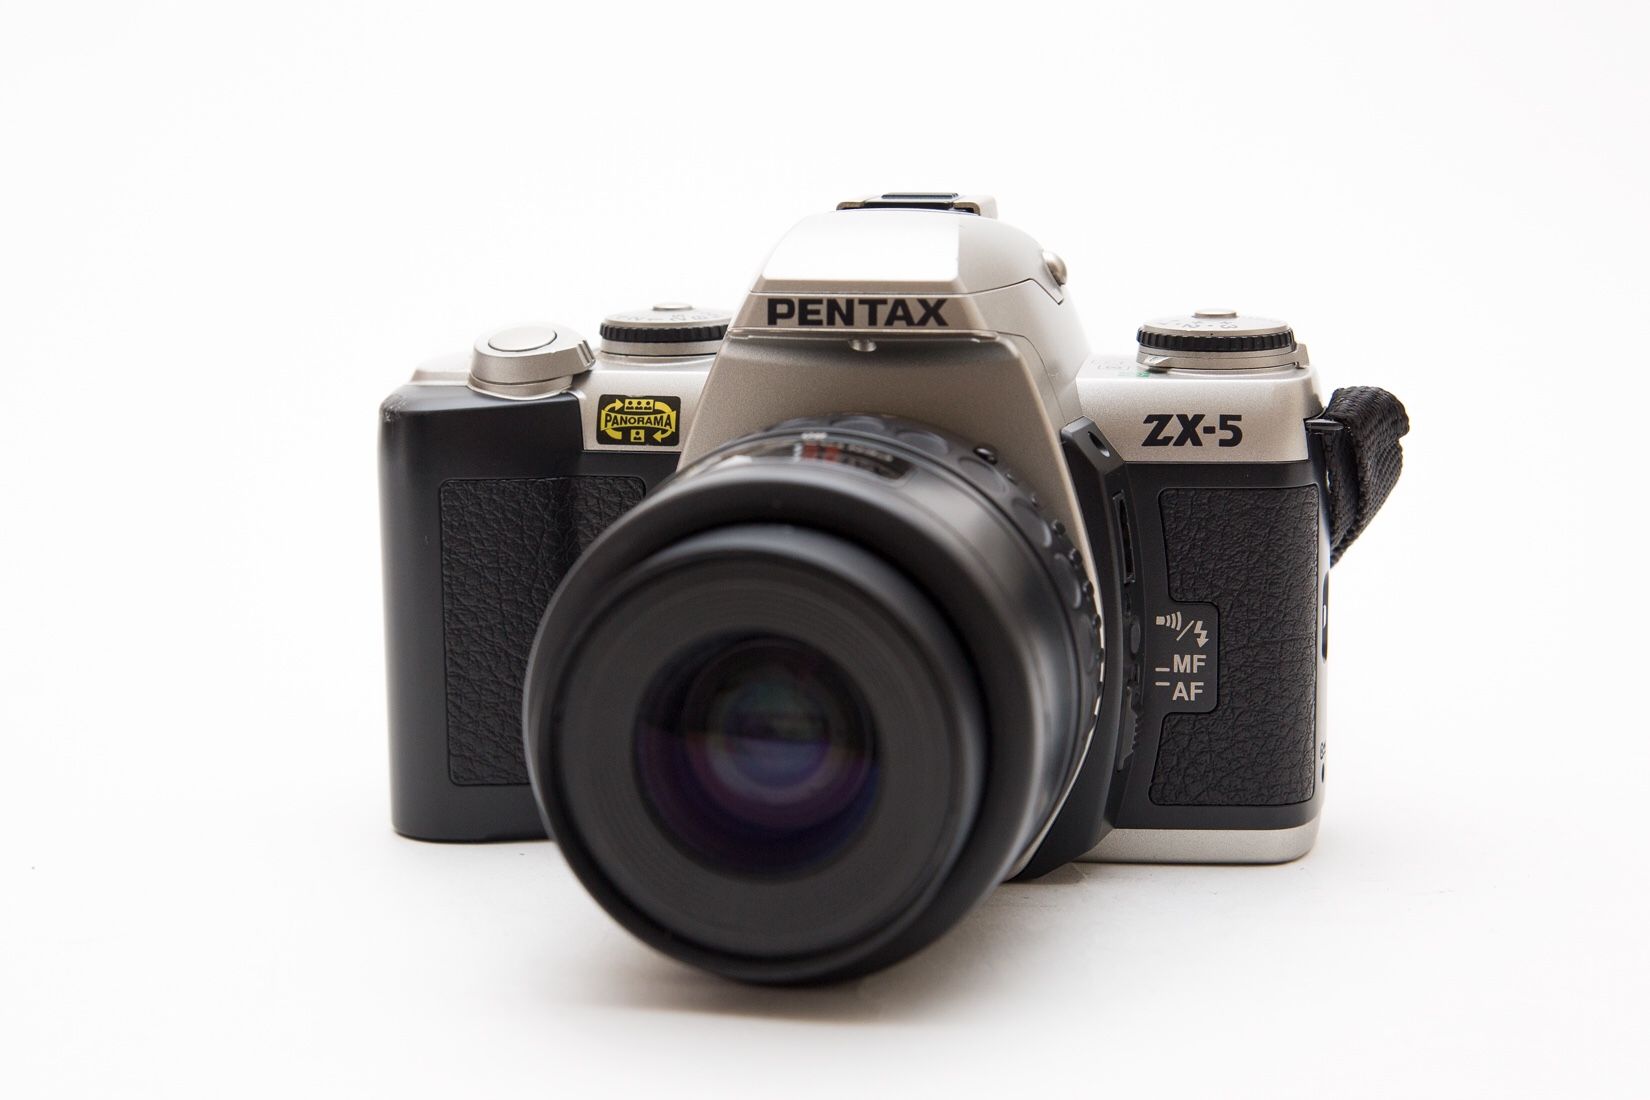 Pentax ZX-5 35mm SLR Film Camera + Lens!